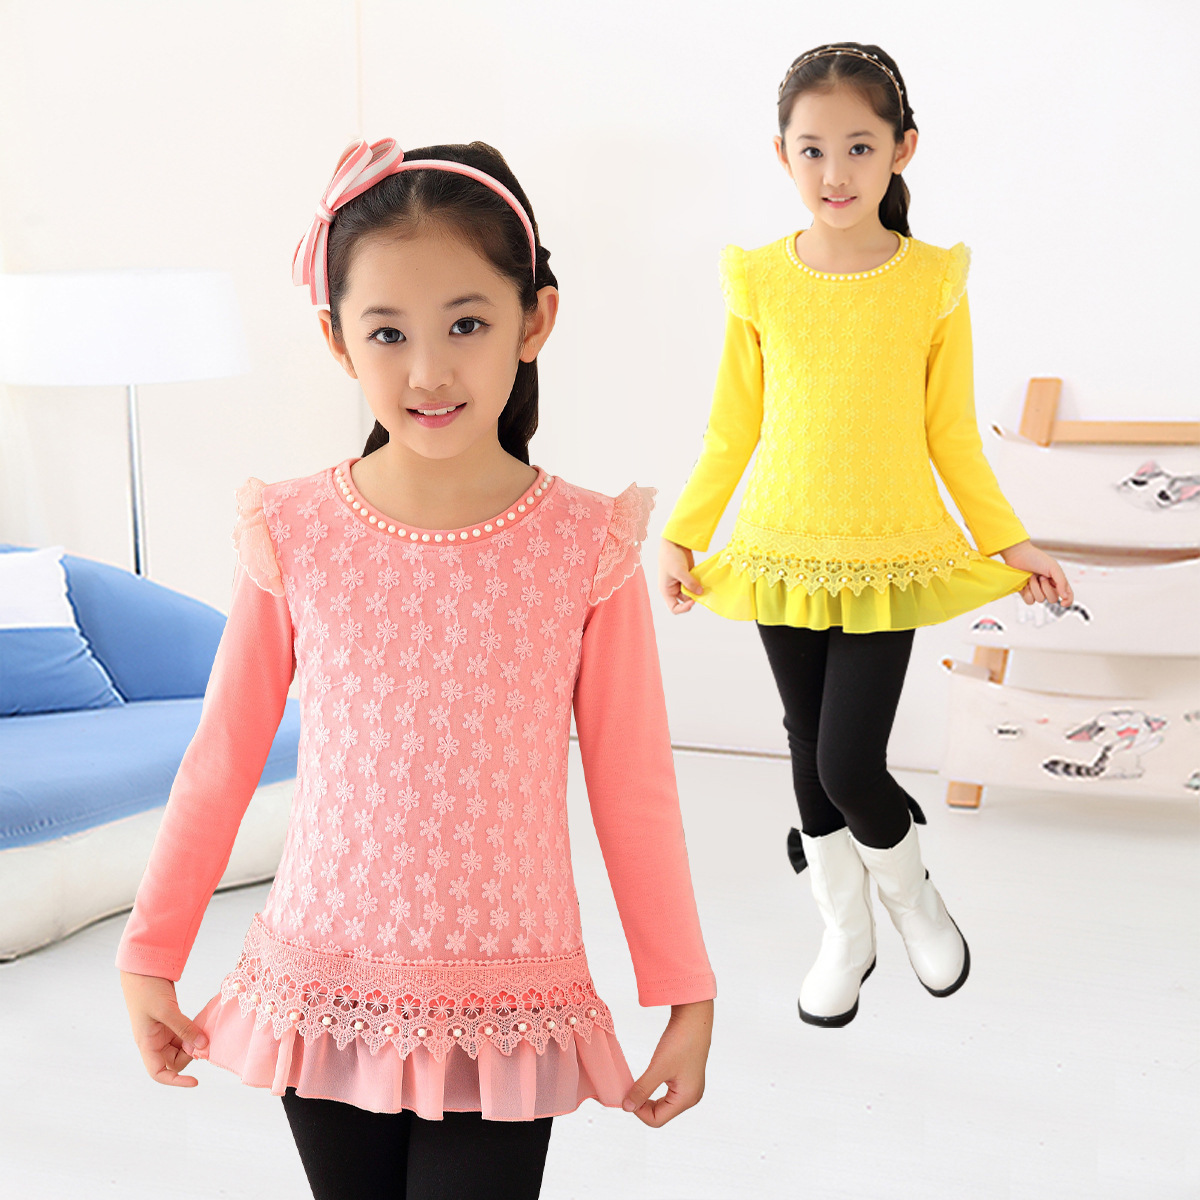 女童2015秋季童装新款韩版长袖打底衫中长款儿童蕾丝花边上衣T恤